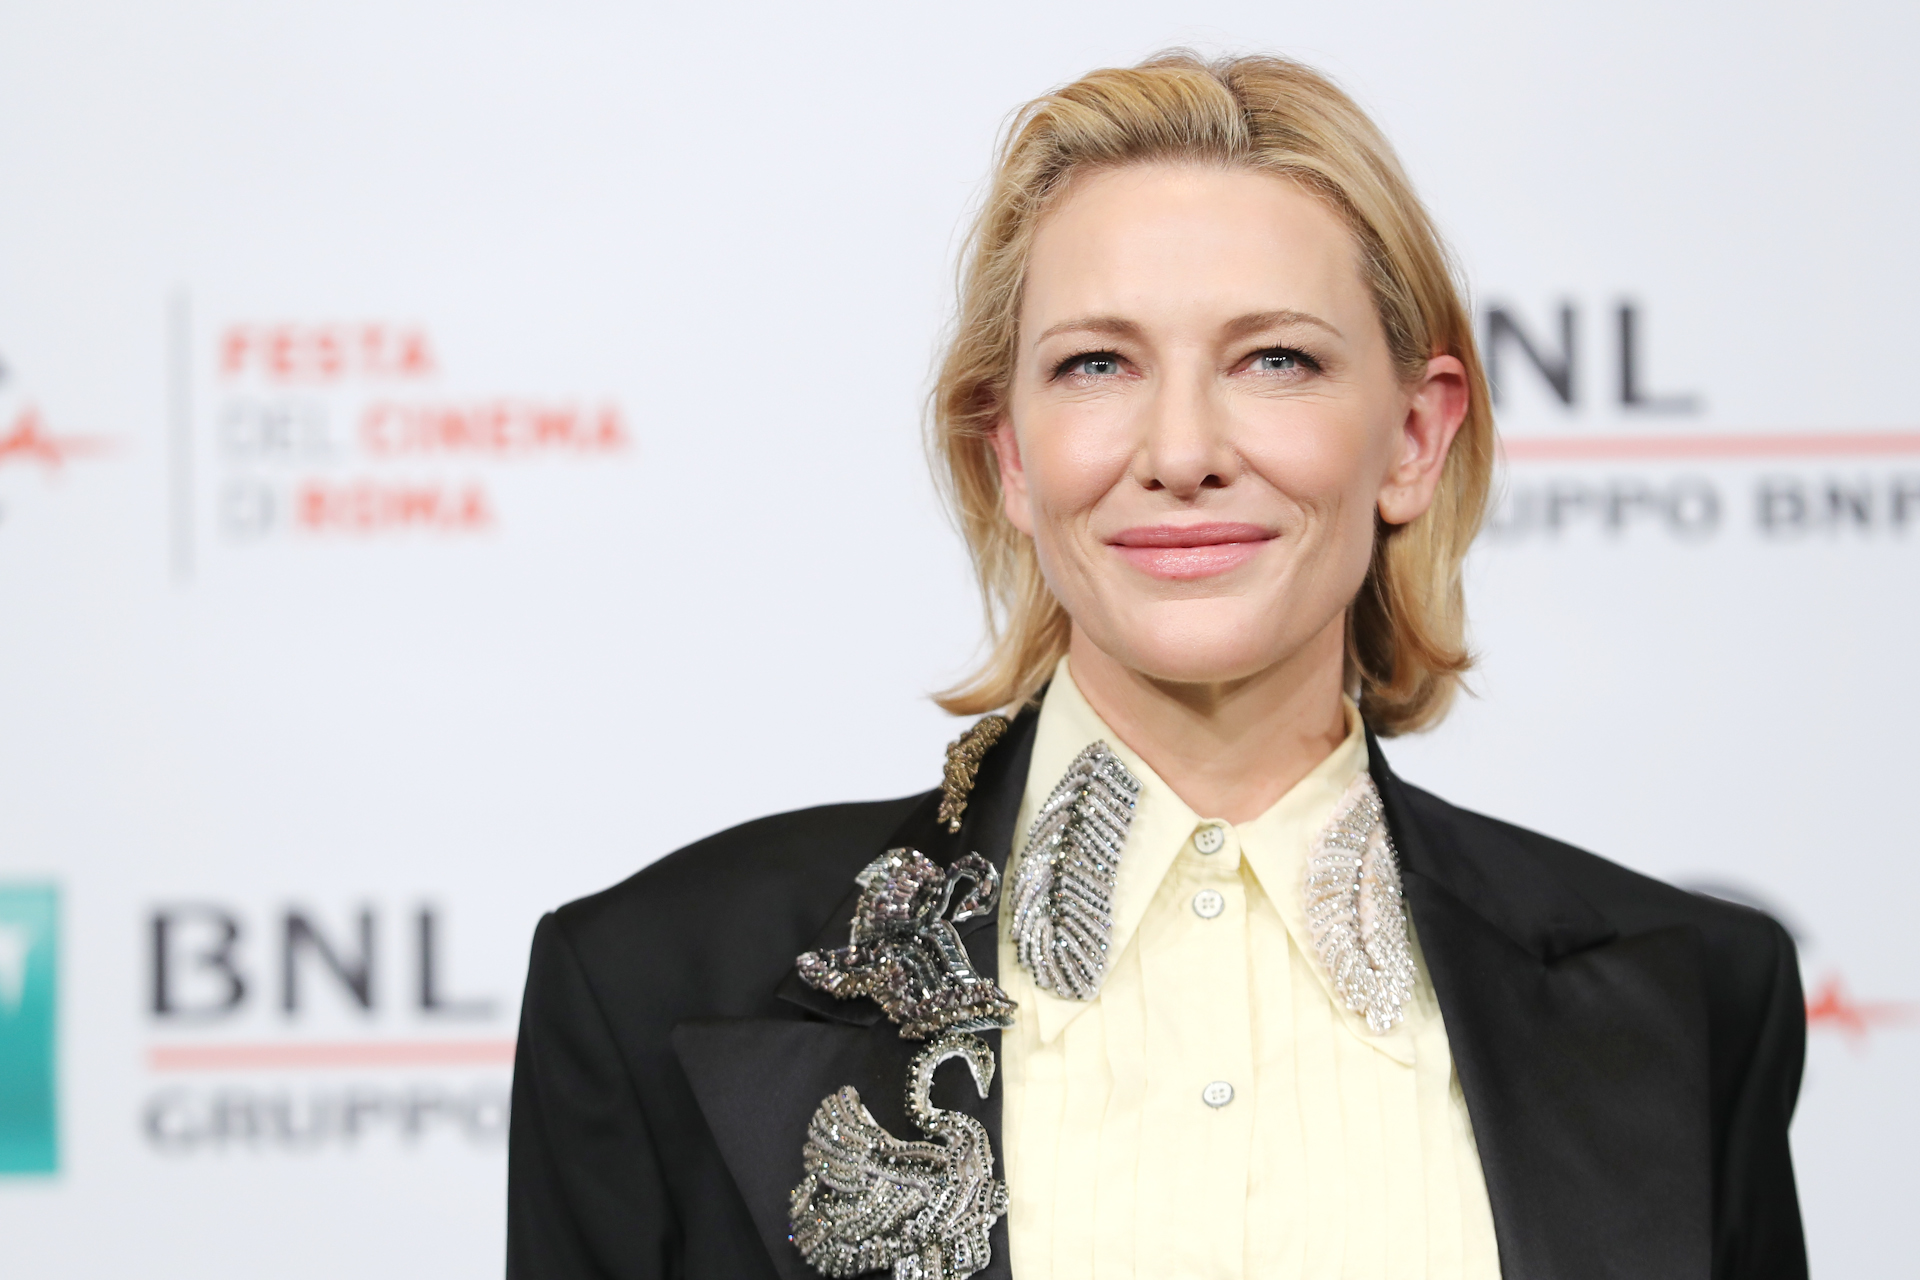 <p>Cate Blanchett consiguió su propio sello en Australia en 2009. La actriz se moría de ganas de ser lamida por millones de australianos, se reía Cate Blanchett al anunciar la noticia. </p>